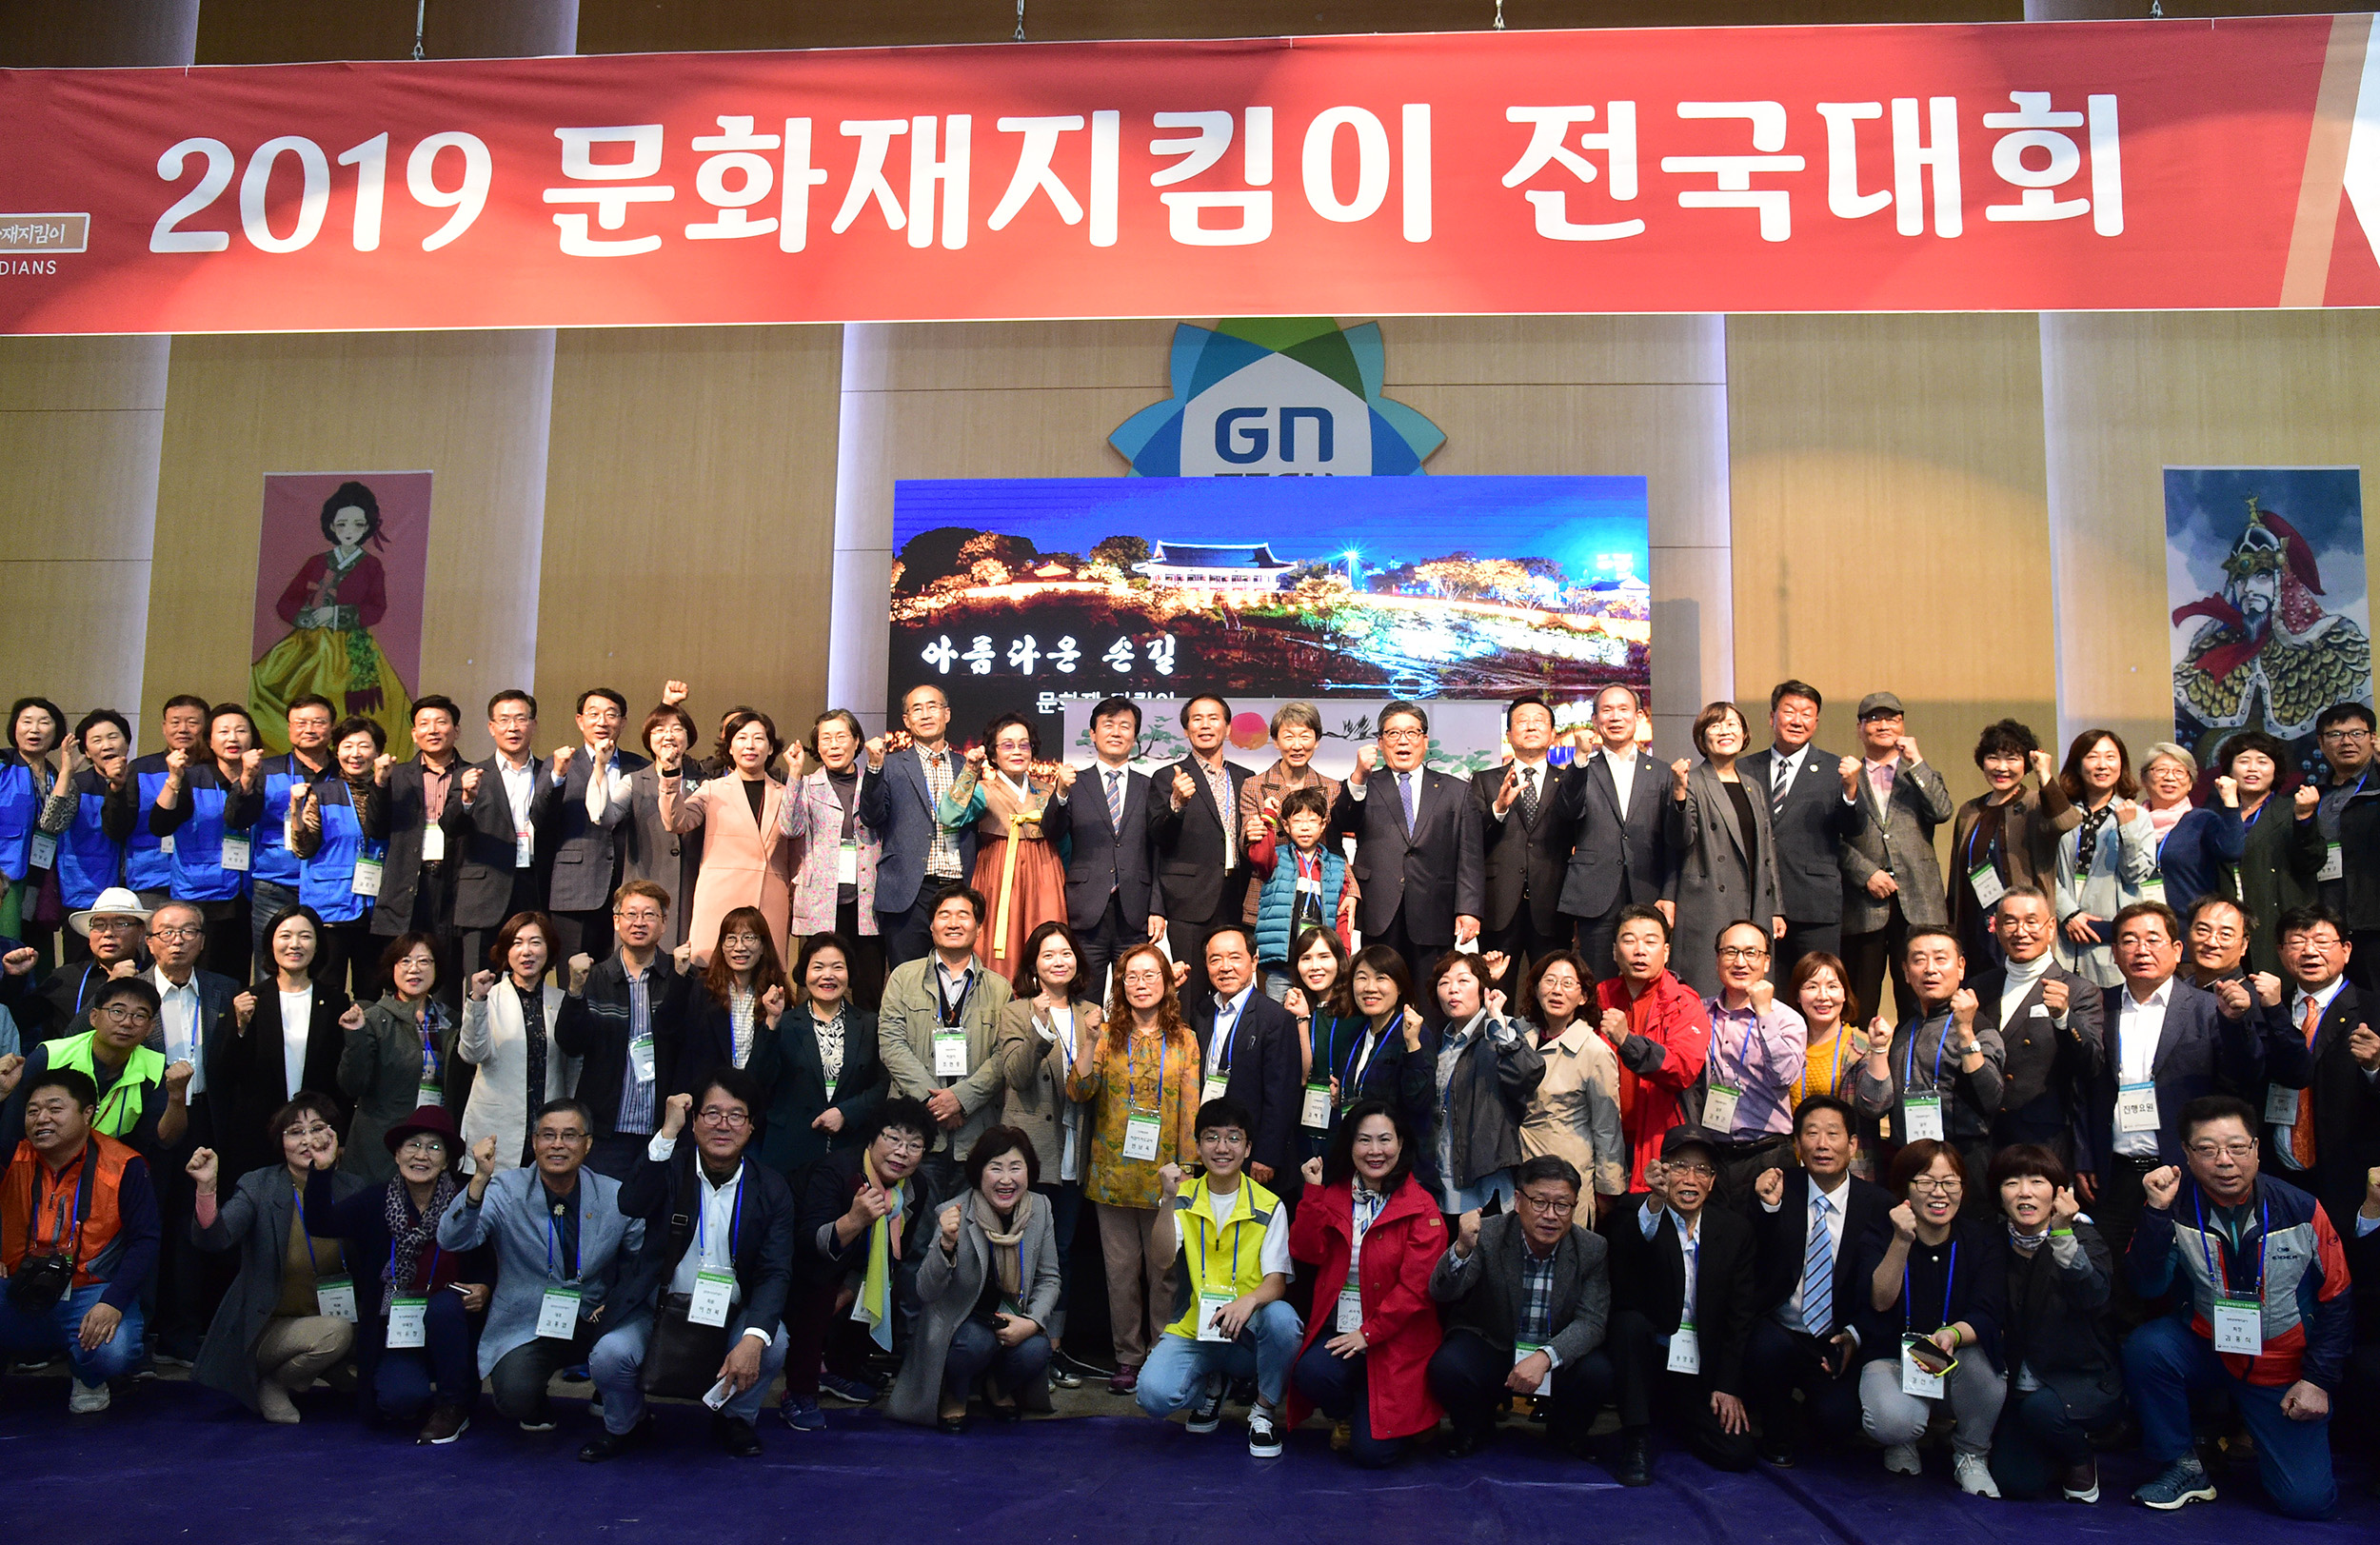 1020 2019 문화재지킴이 전국대회 열려 (1).JPG